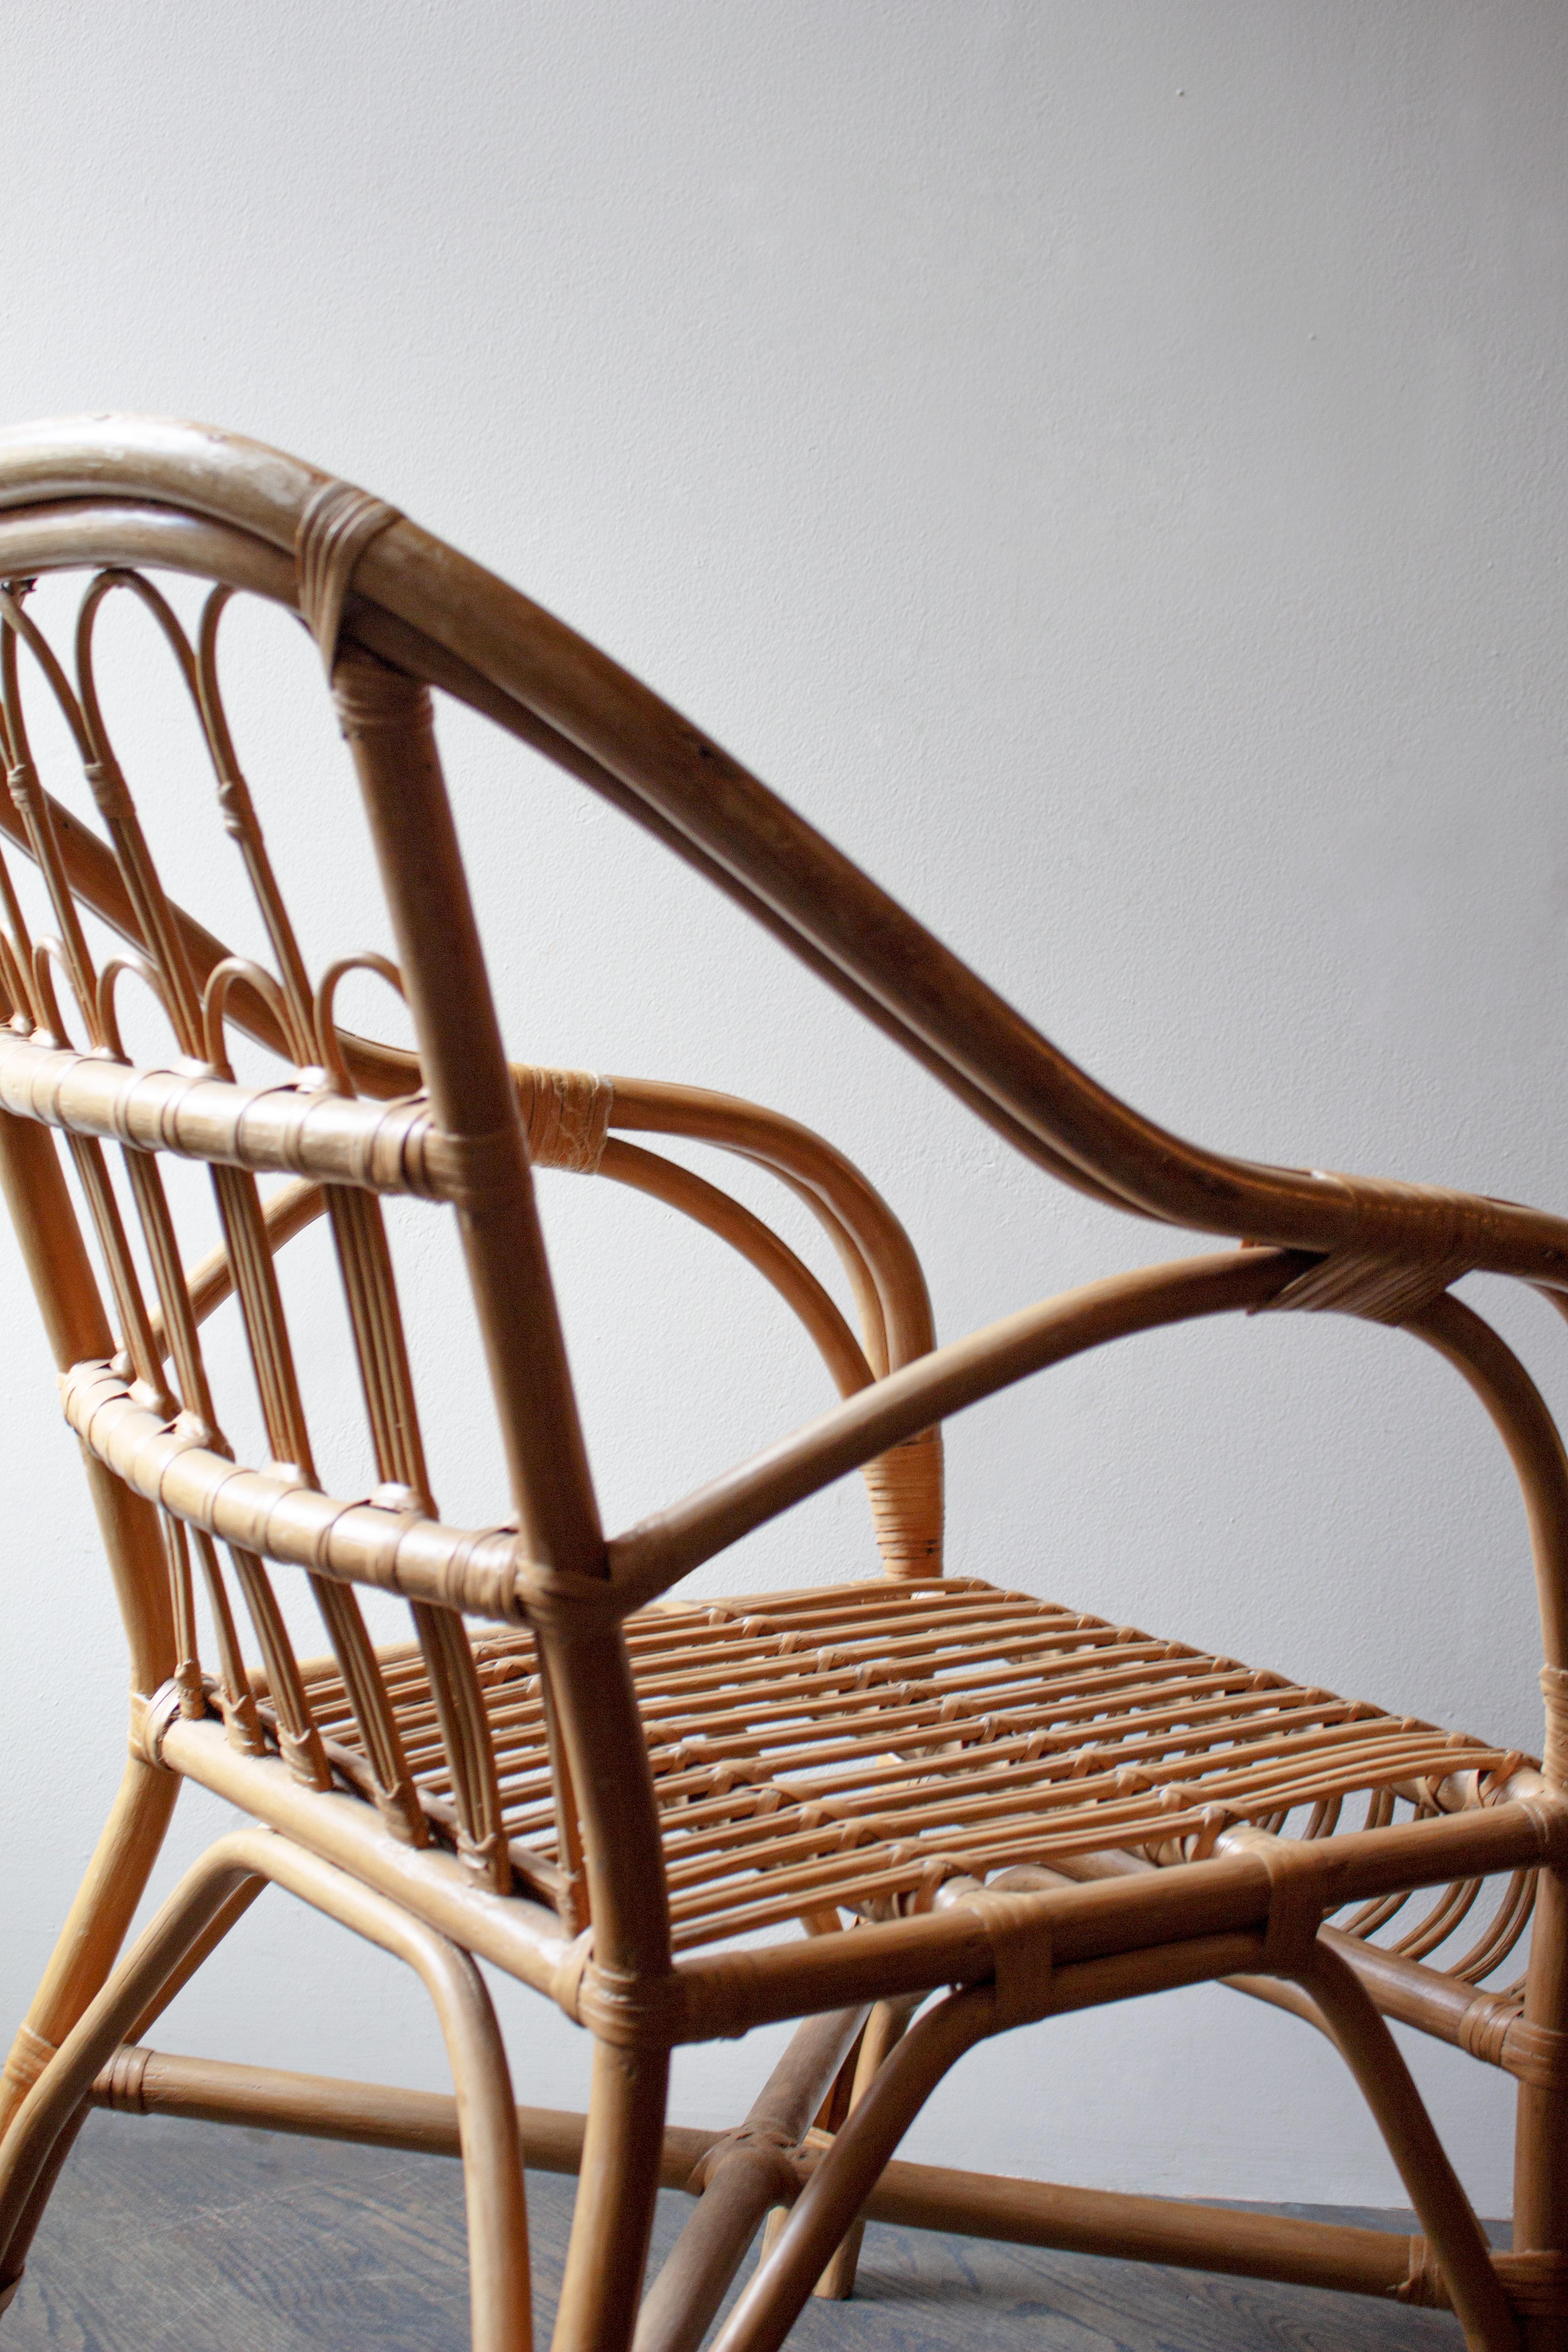 Cette chaise en rotin est à la fois fantaisiste et polie. Le rotin est robuste et en excellent état.